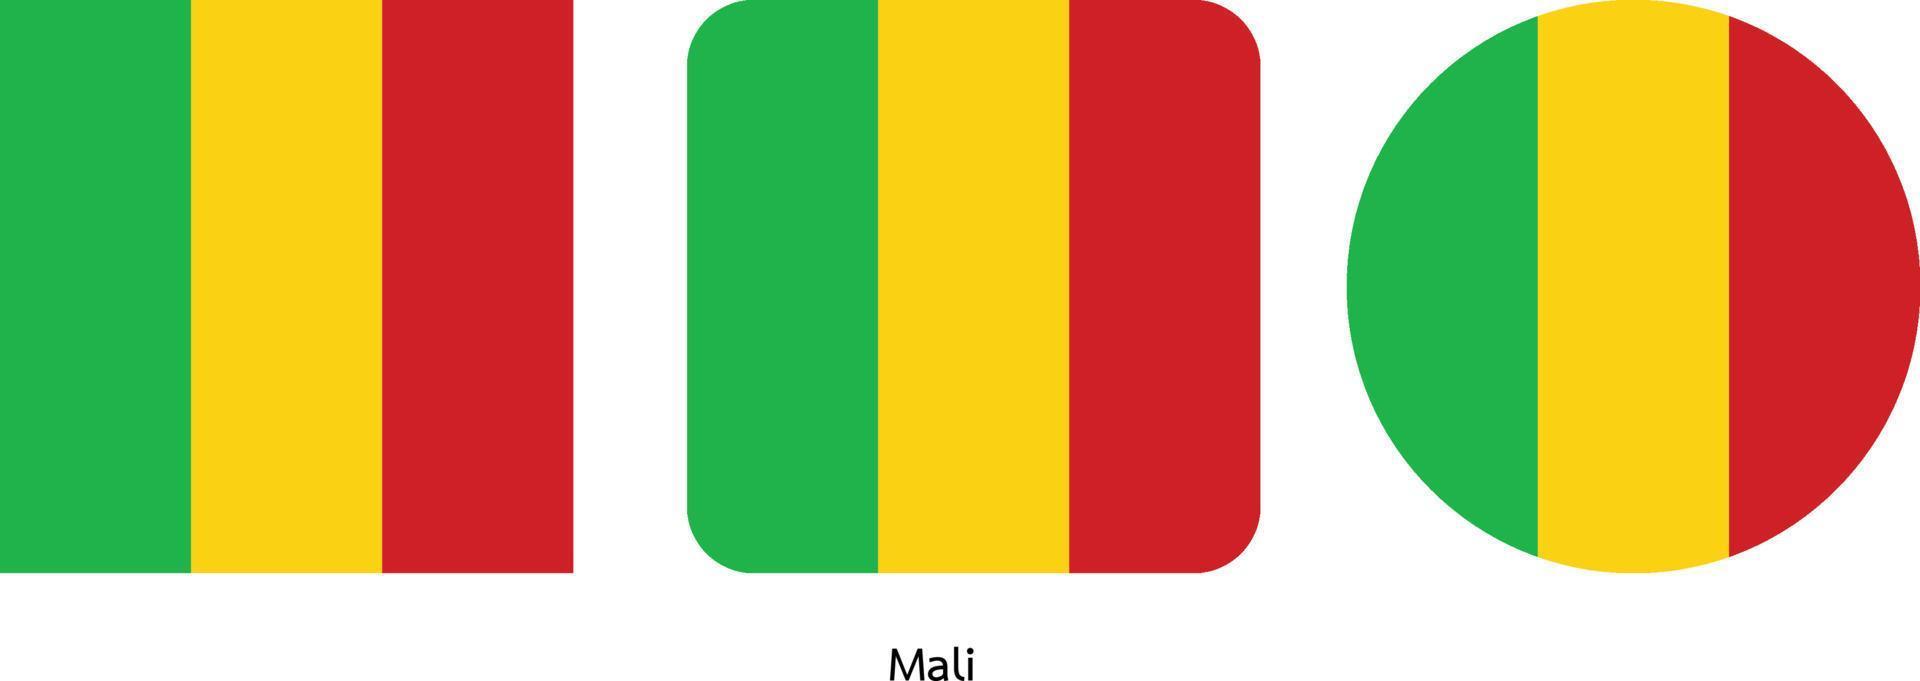 bandeira do mali, ilustração vetorial vetor